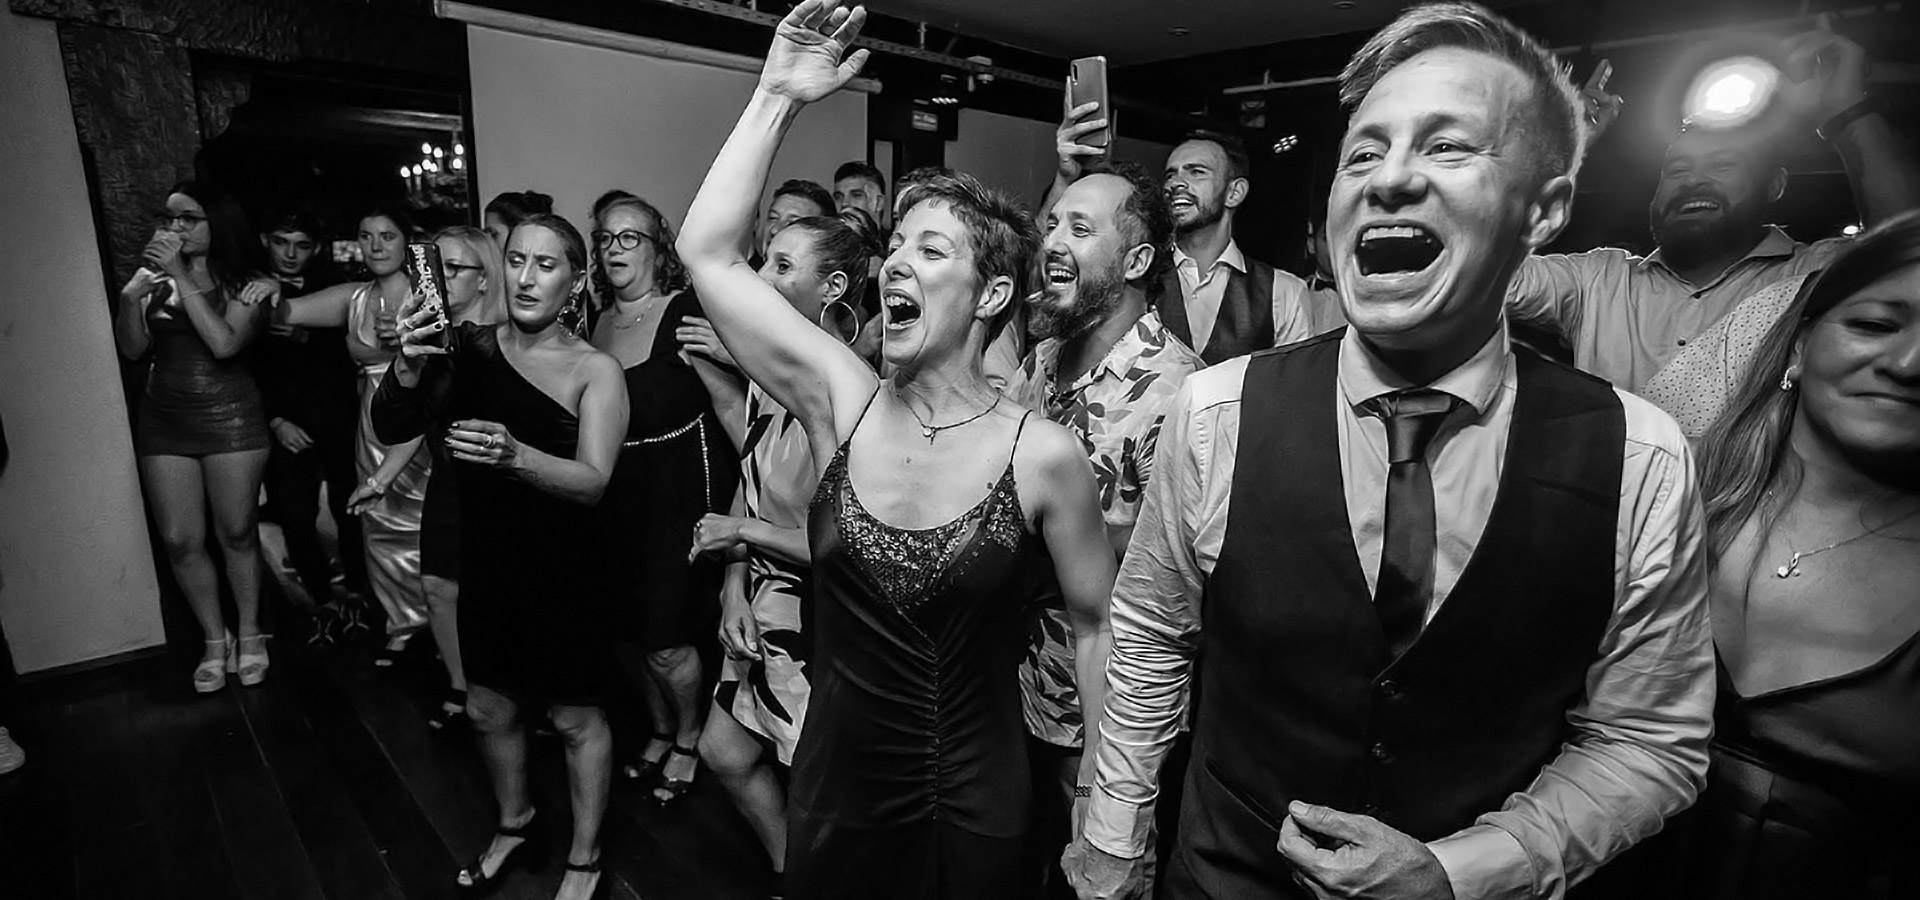 Fiesta de la boda, diversión para novios e invitados, fotografia en blanco y negro por el fotógrafo Esteban Lago